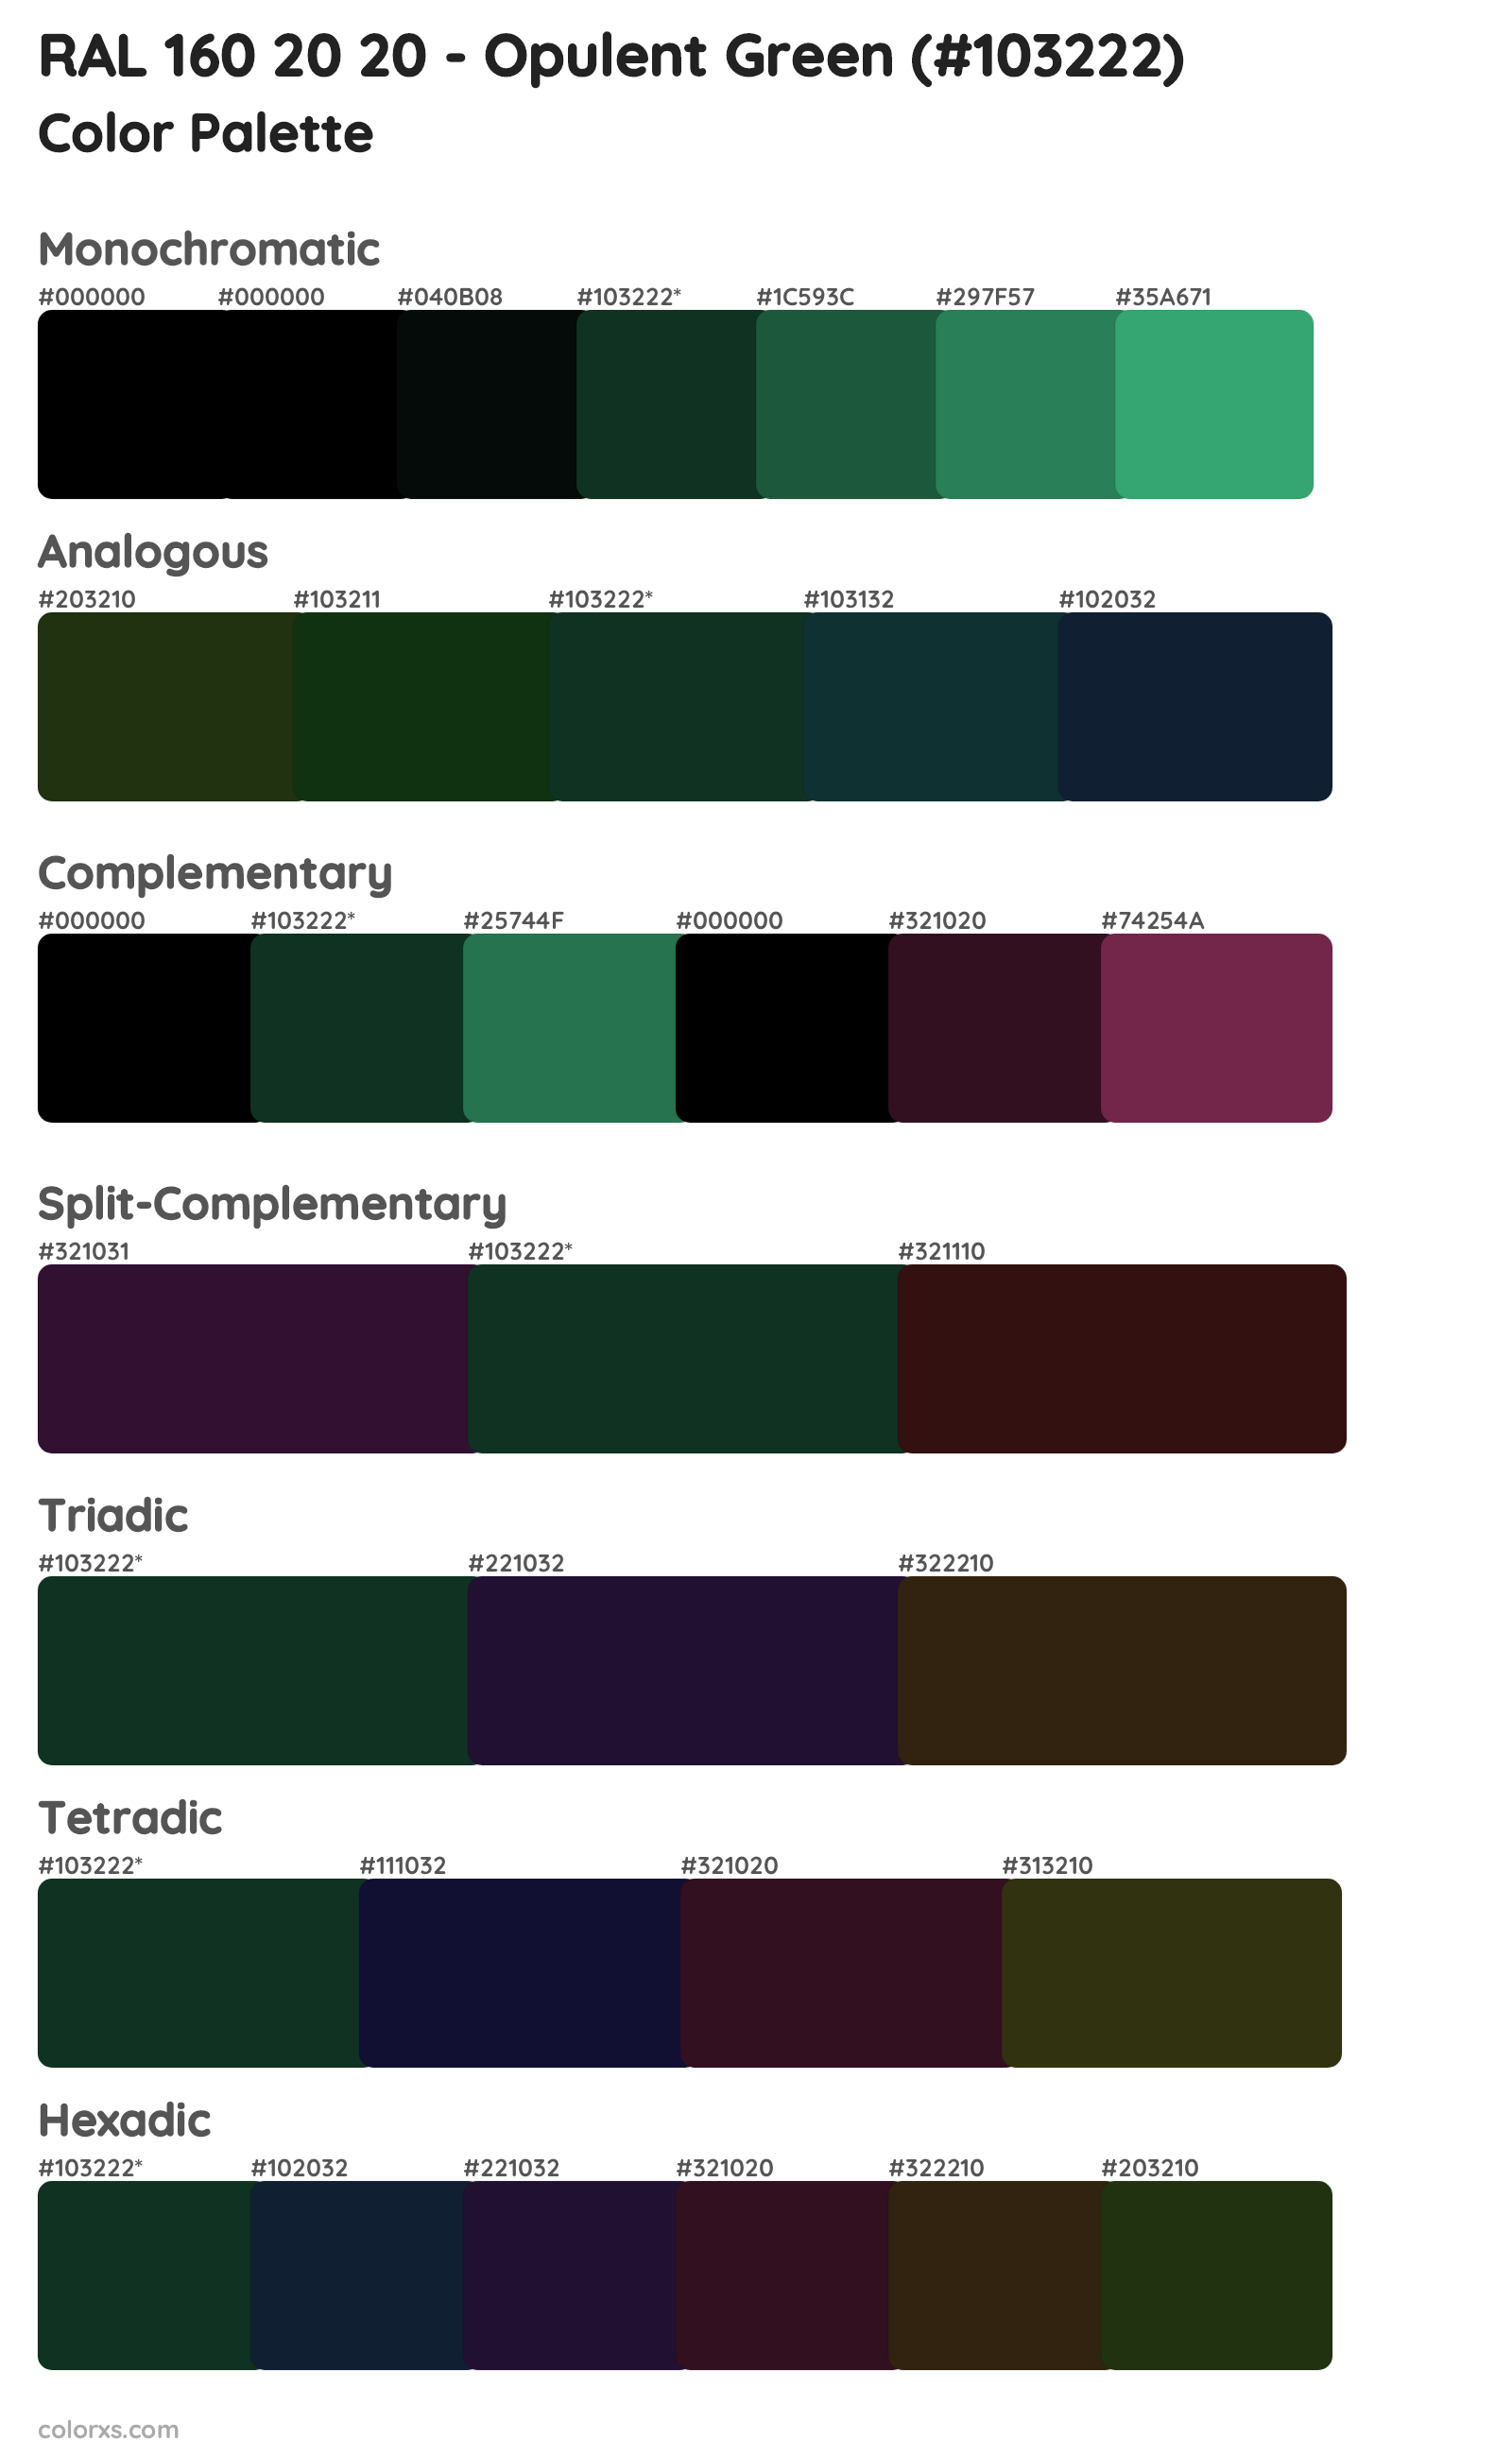 RAL 160 20 20 - Opulent Green Color Scheme Palettes